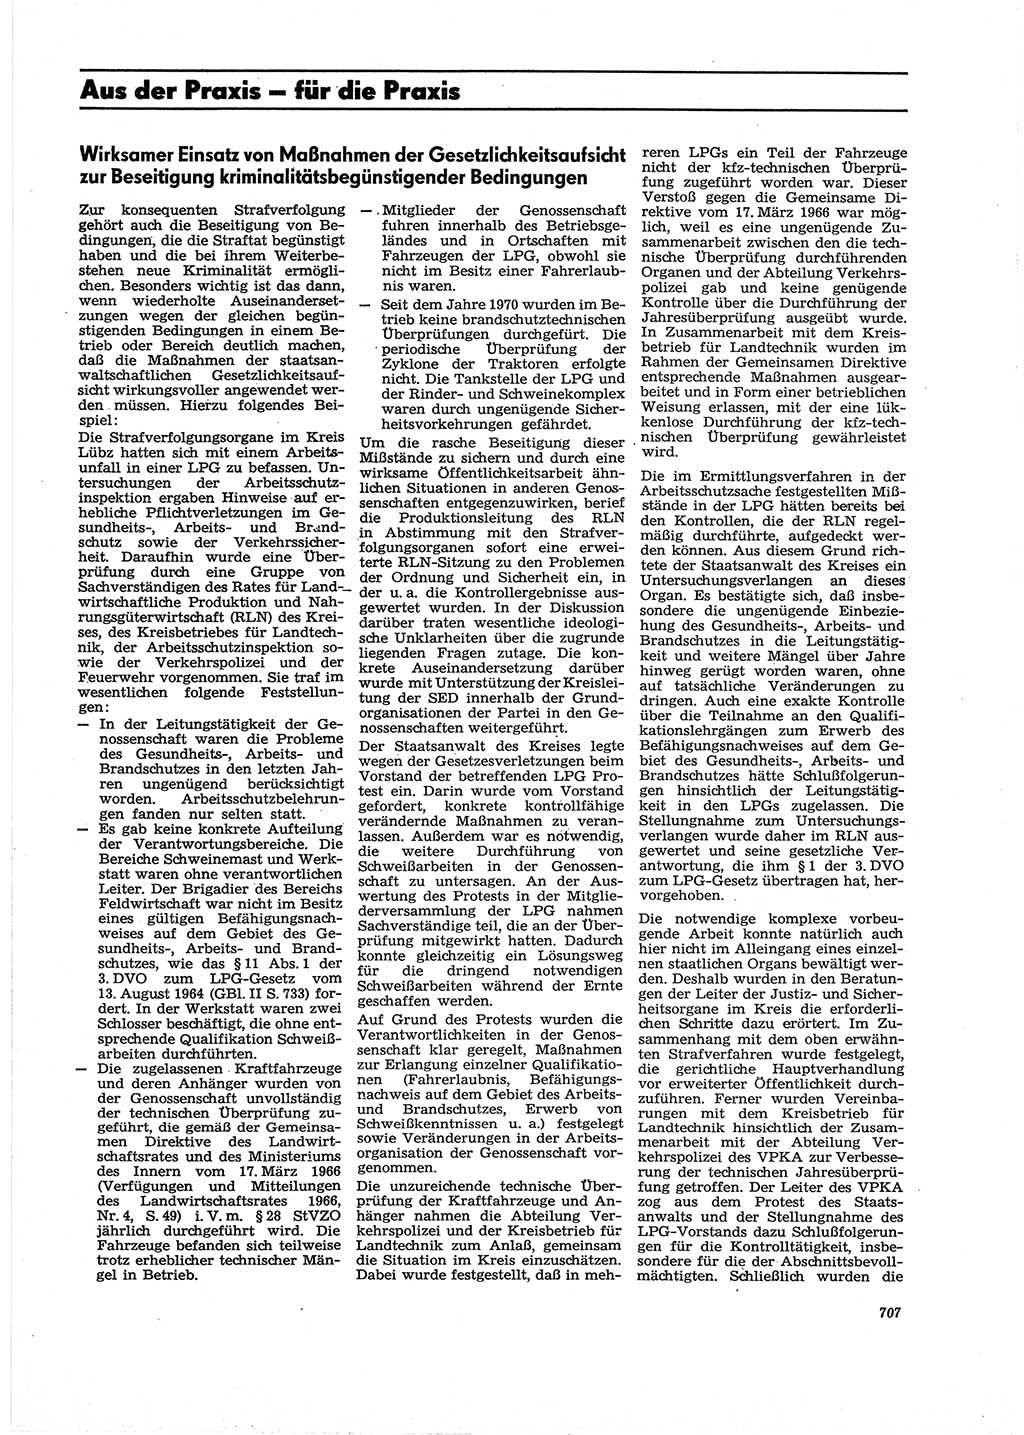 Neue Justiz (NJ), Zeitschrift für Recht und Rechtswissenschaft [Deutsche Demokratische Republik (DDR)], 27. Jahrgang 1973, Seite 707 (NJ DDR 1973, S. 707)